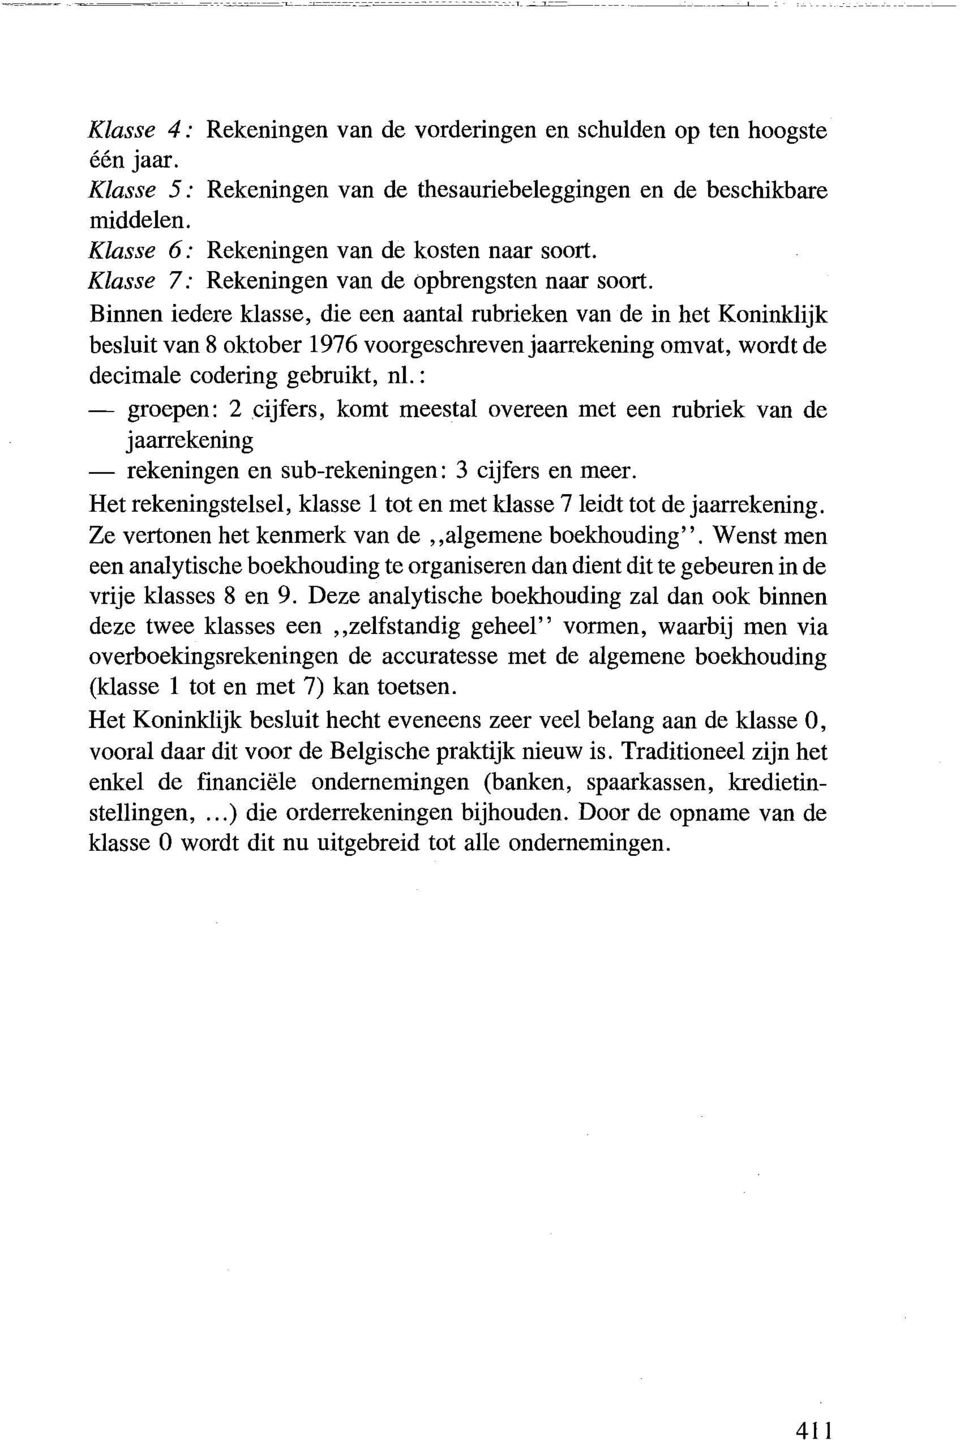 Binnen iedere klasse, die een aantal rubrieken van de in het Koninklijk besluit van 8 oktober 1976 voorgeschrevenjaarrekening omvat, wordt de decimale codering gebruikt, nl.